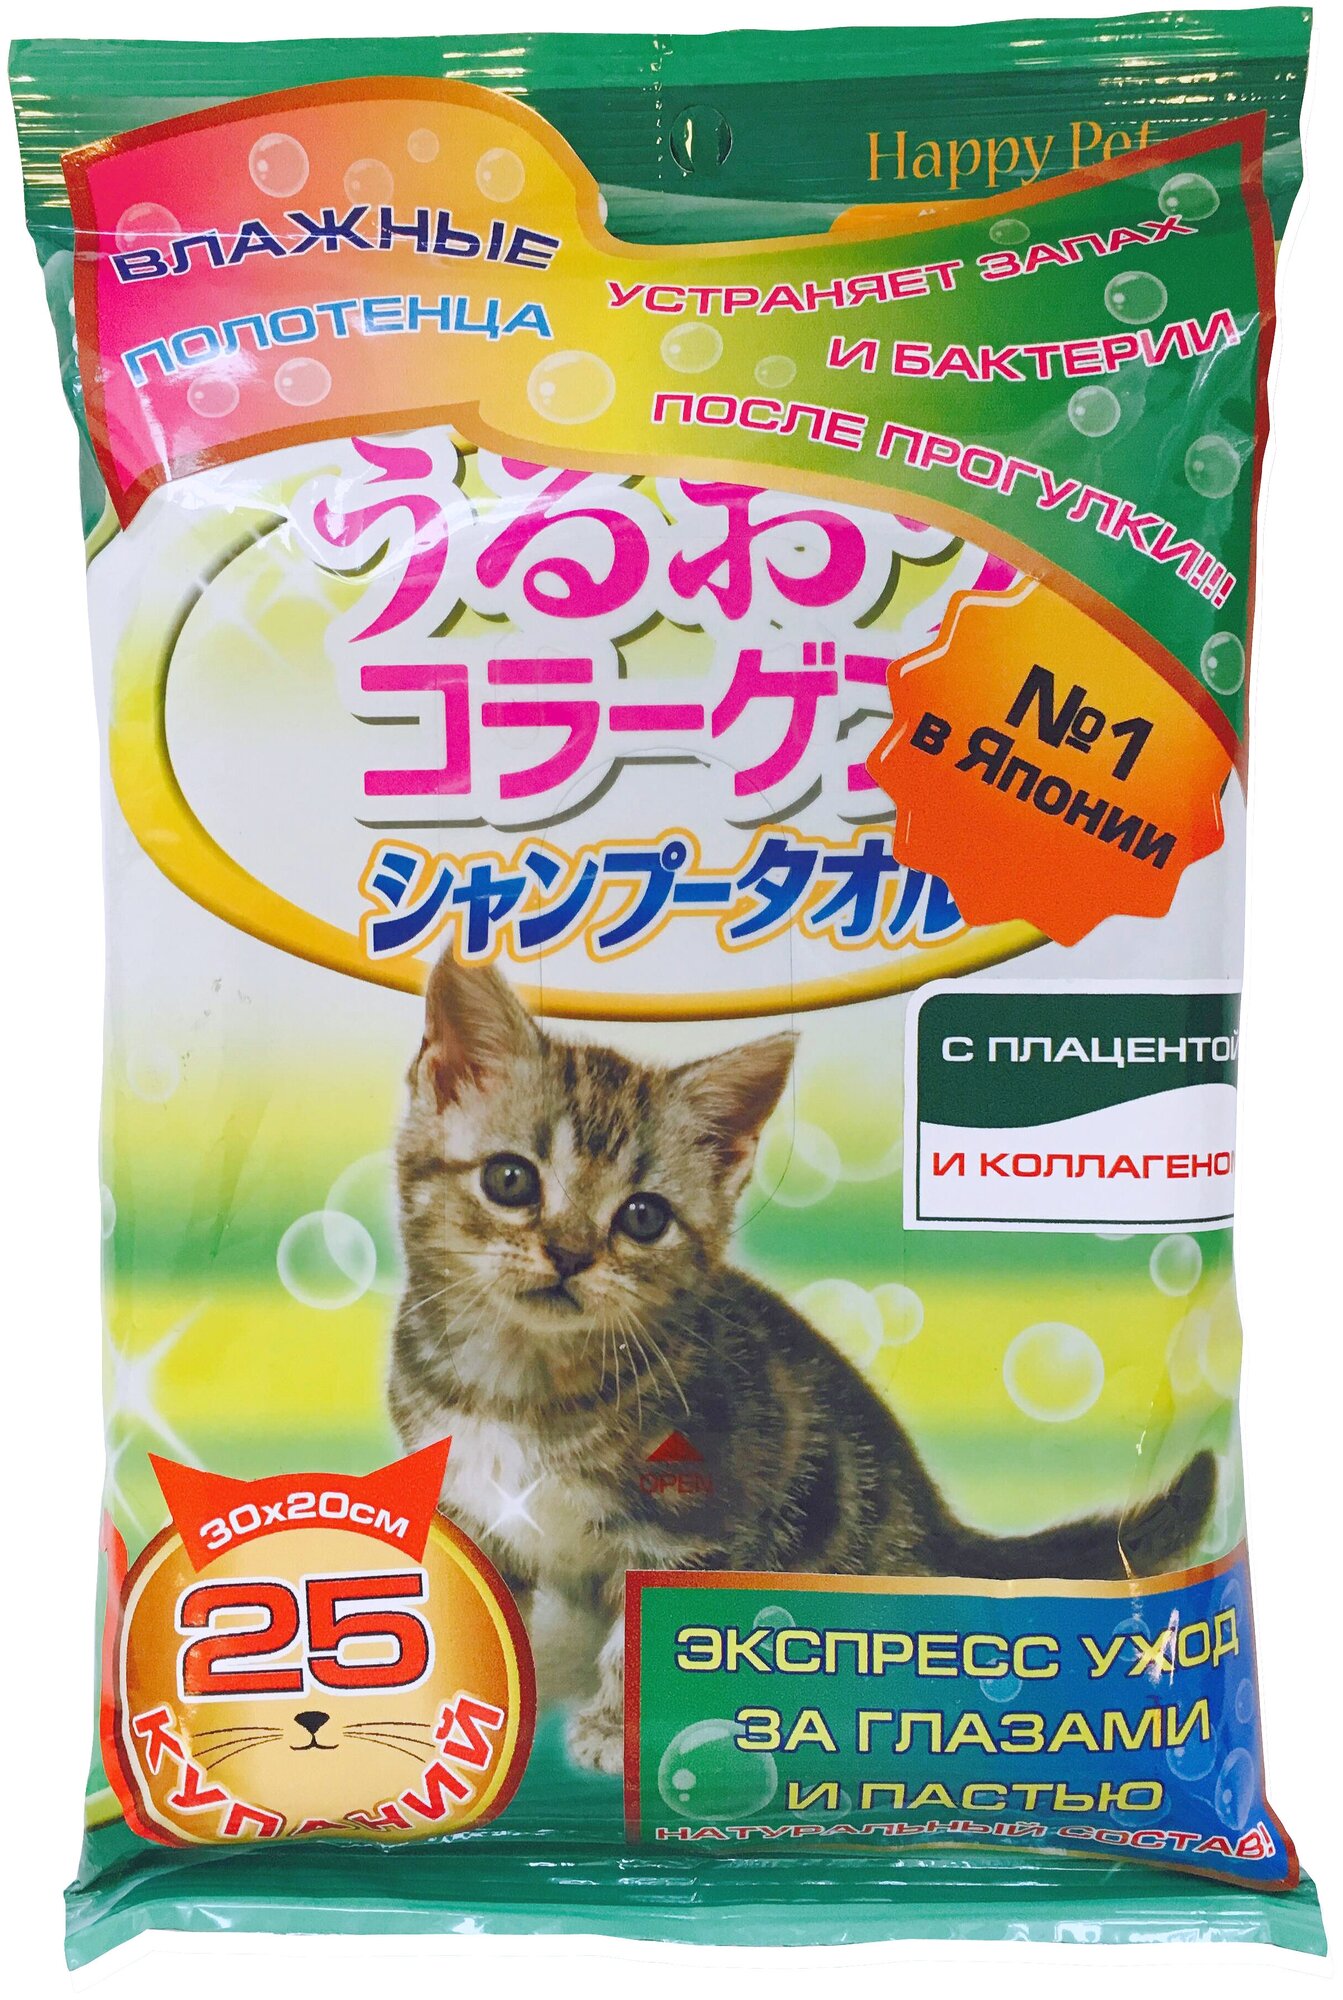 Шампуневые полотенца Japan Premium Pet, экспресс-купание без воды. С коллагеном и плацентой. Для кошек. 25шт.